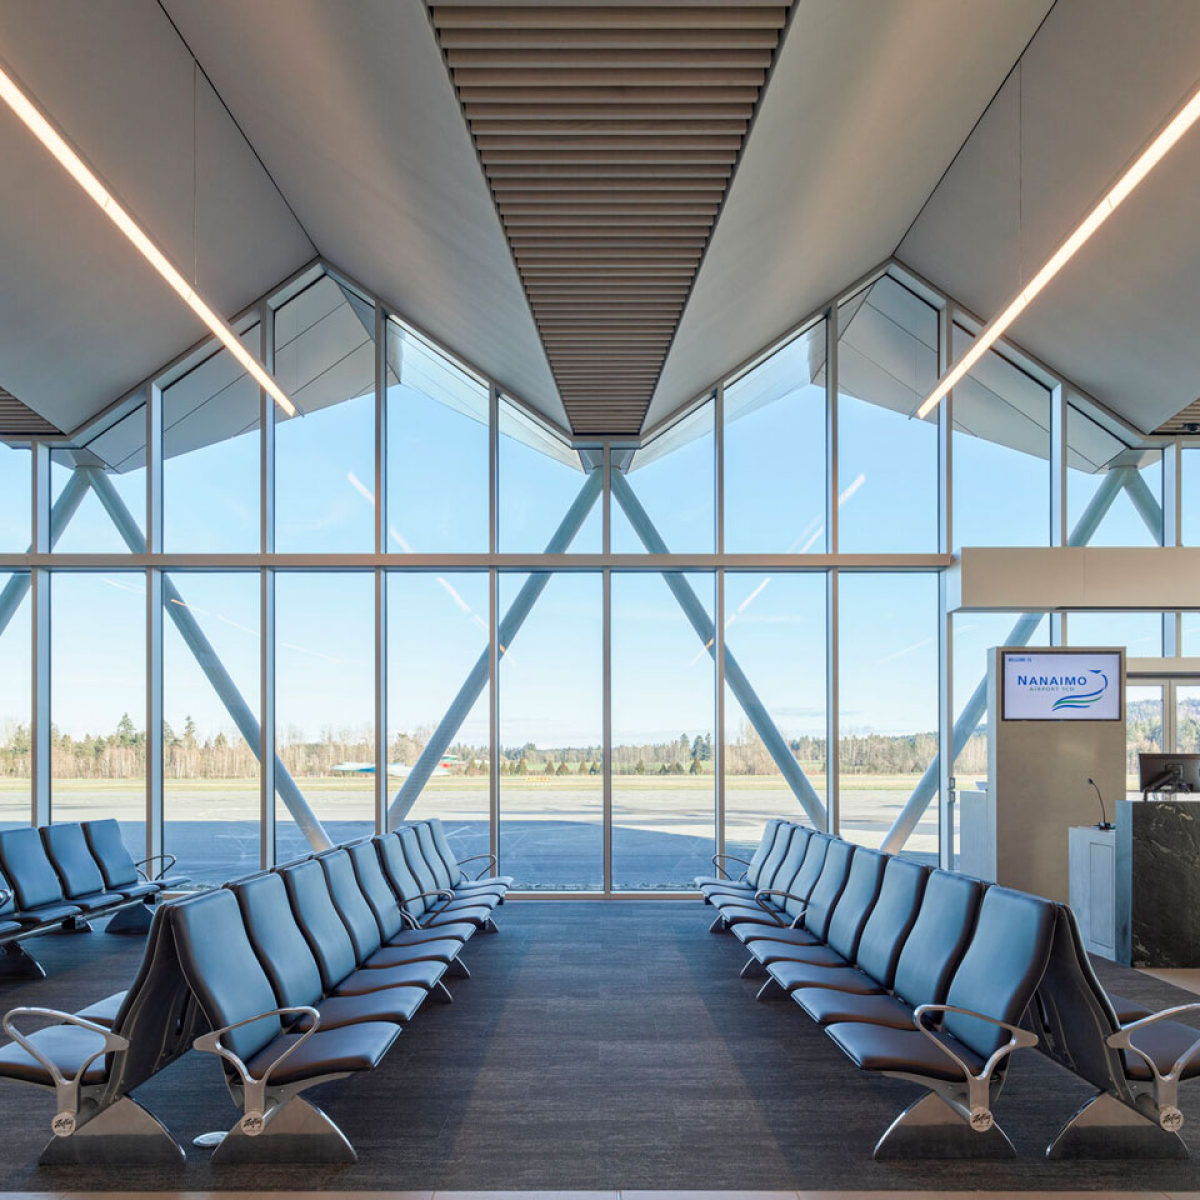 Nanaimo Airport – Linea Ceilings